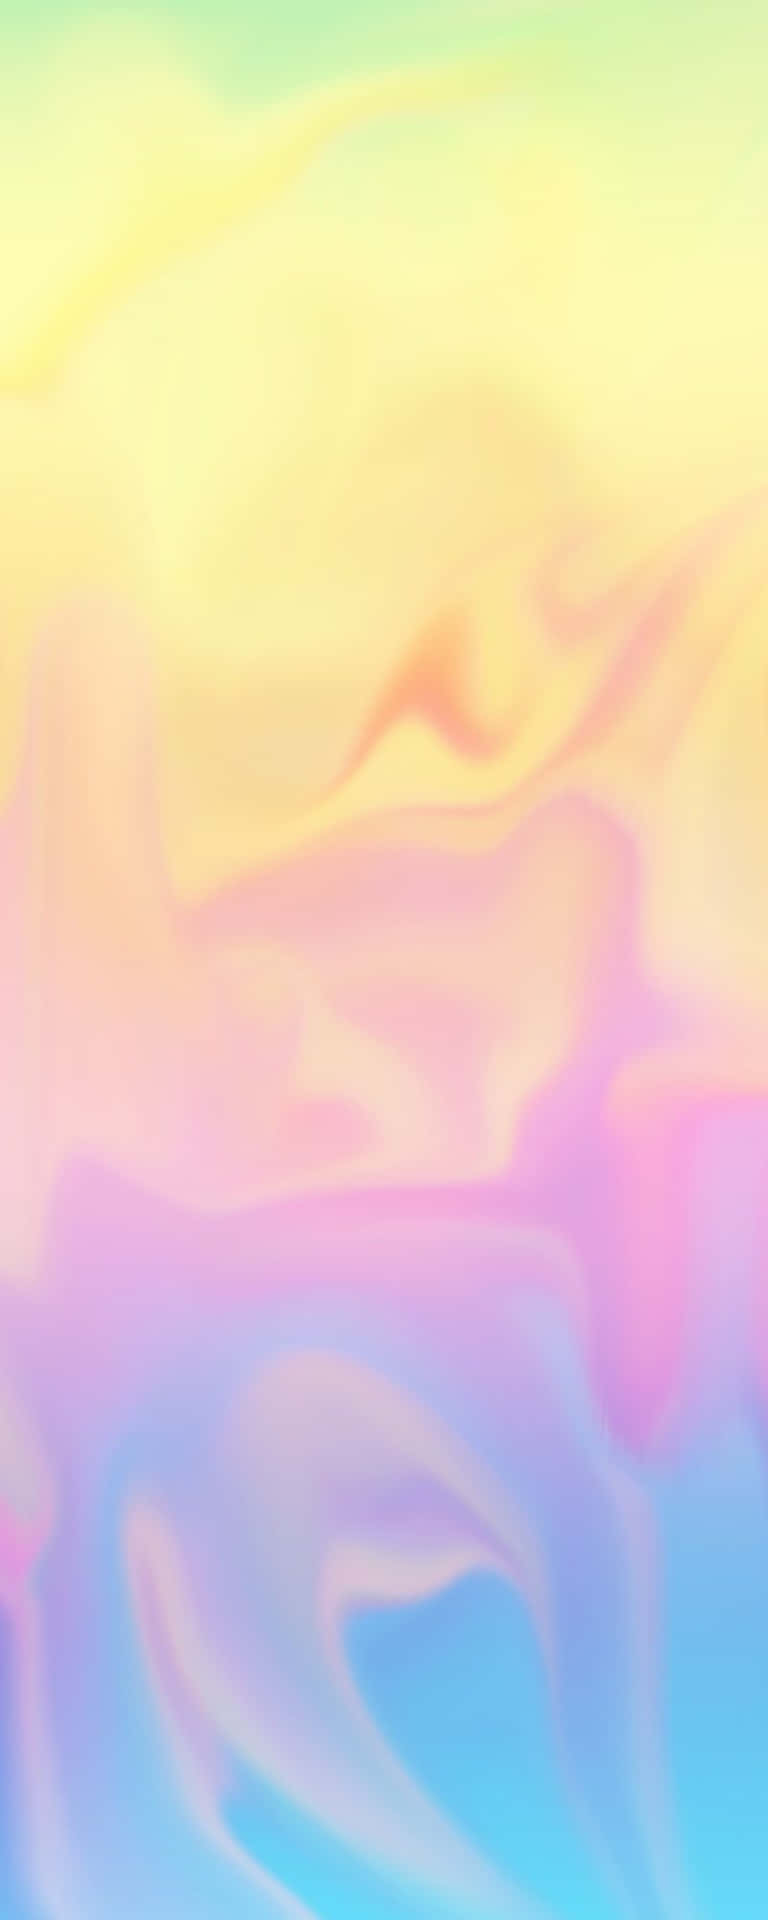 Unsuave Degradado Rosa Pastel Y Amarillo, Representando La Belleza De La Naturaleza. Fondo de pantalla